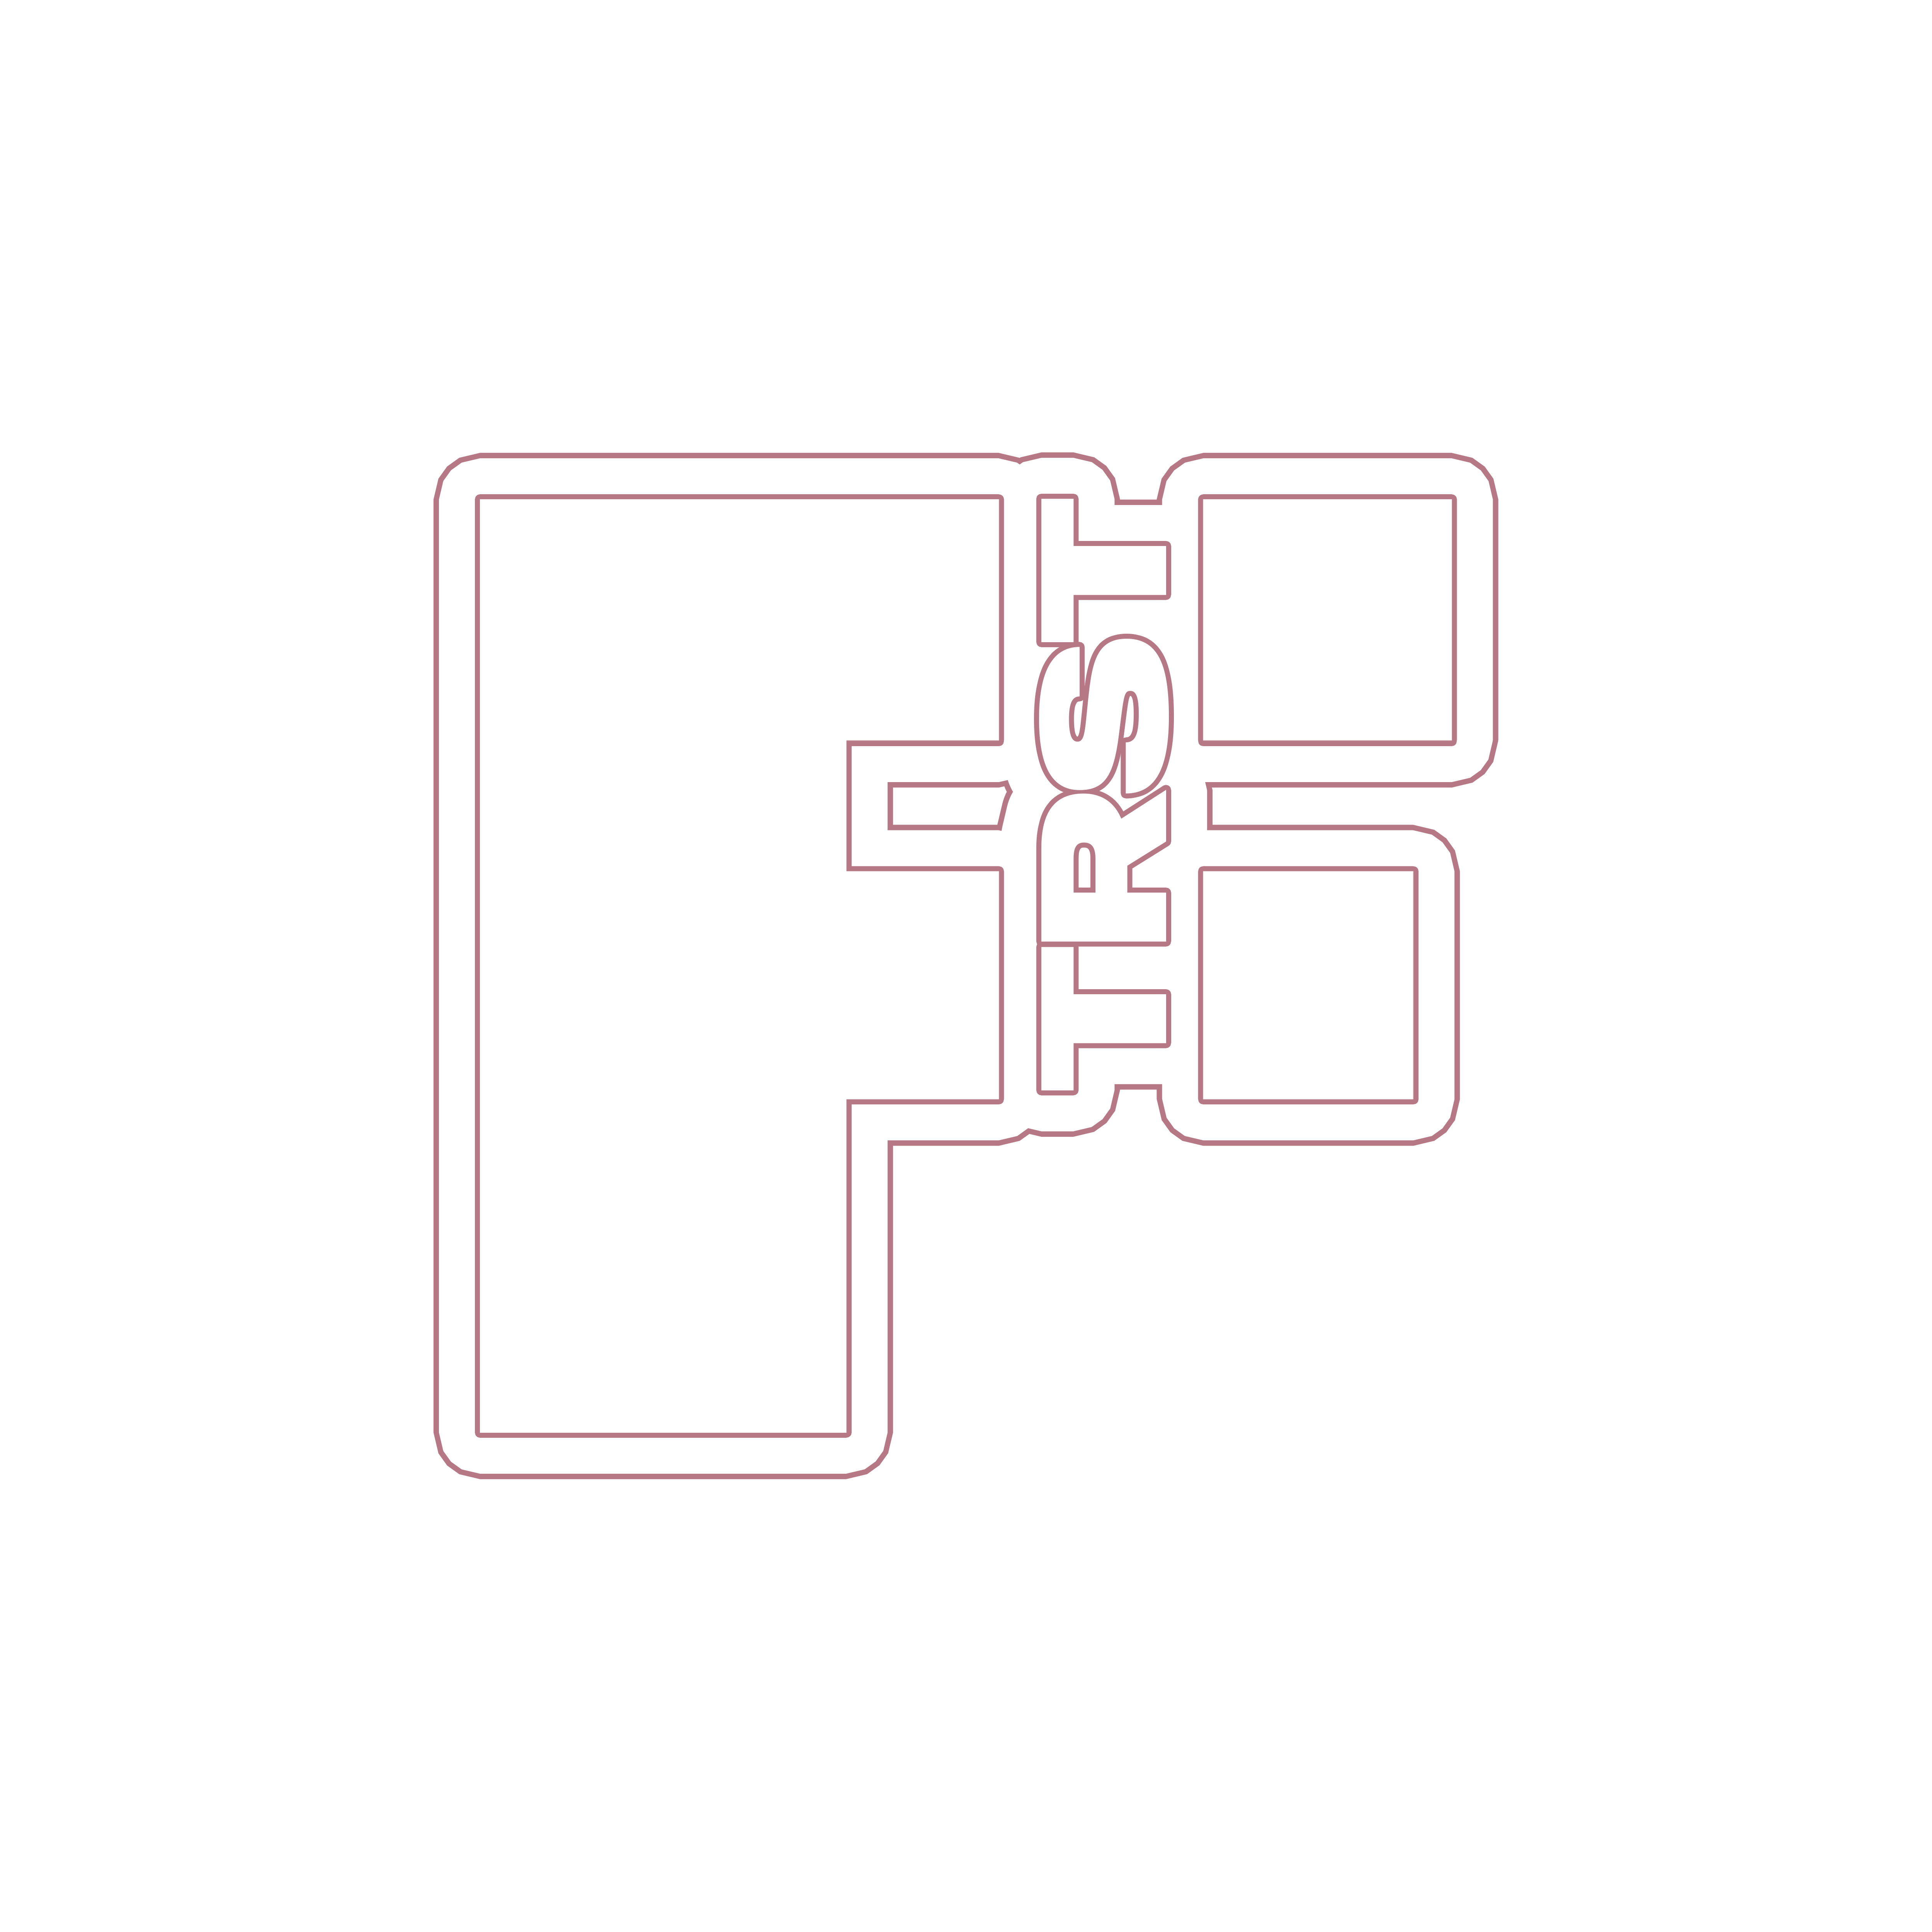 ftr-logo